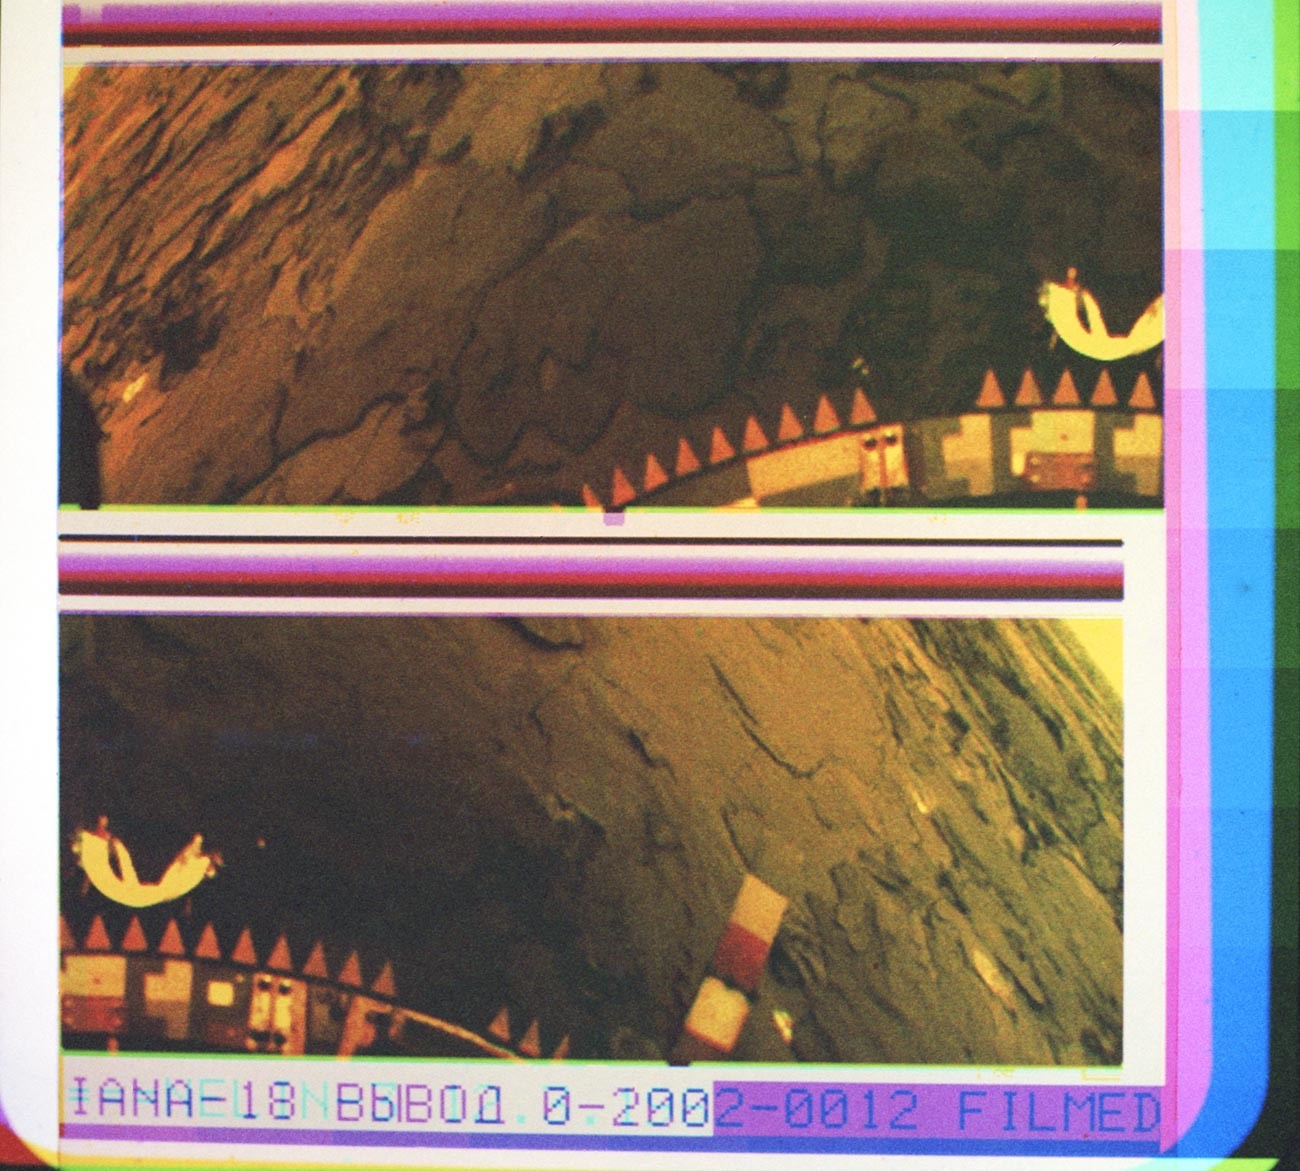 Цветное панорамное изображение поверхности Венеры, переданное с борта спускаемого аппарата станции 